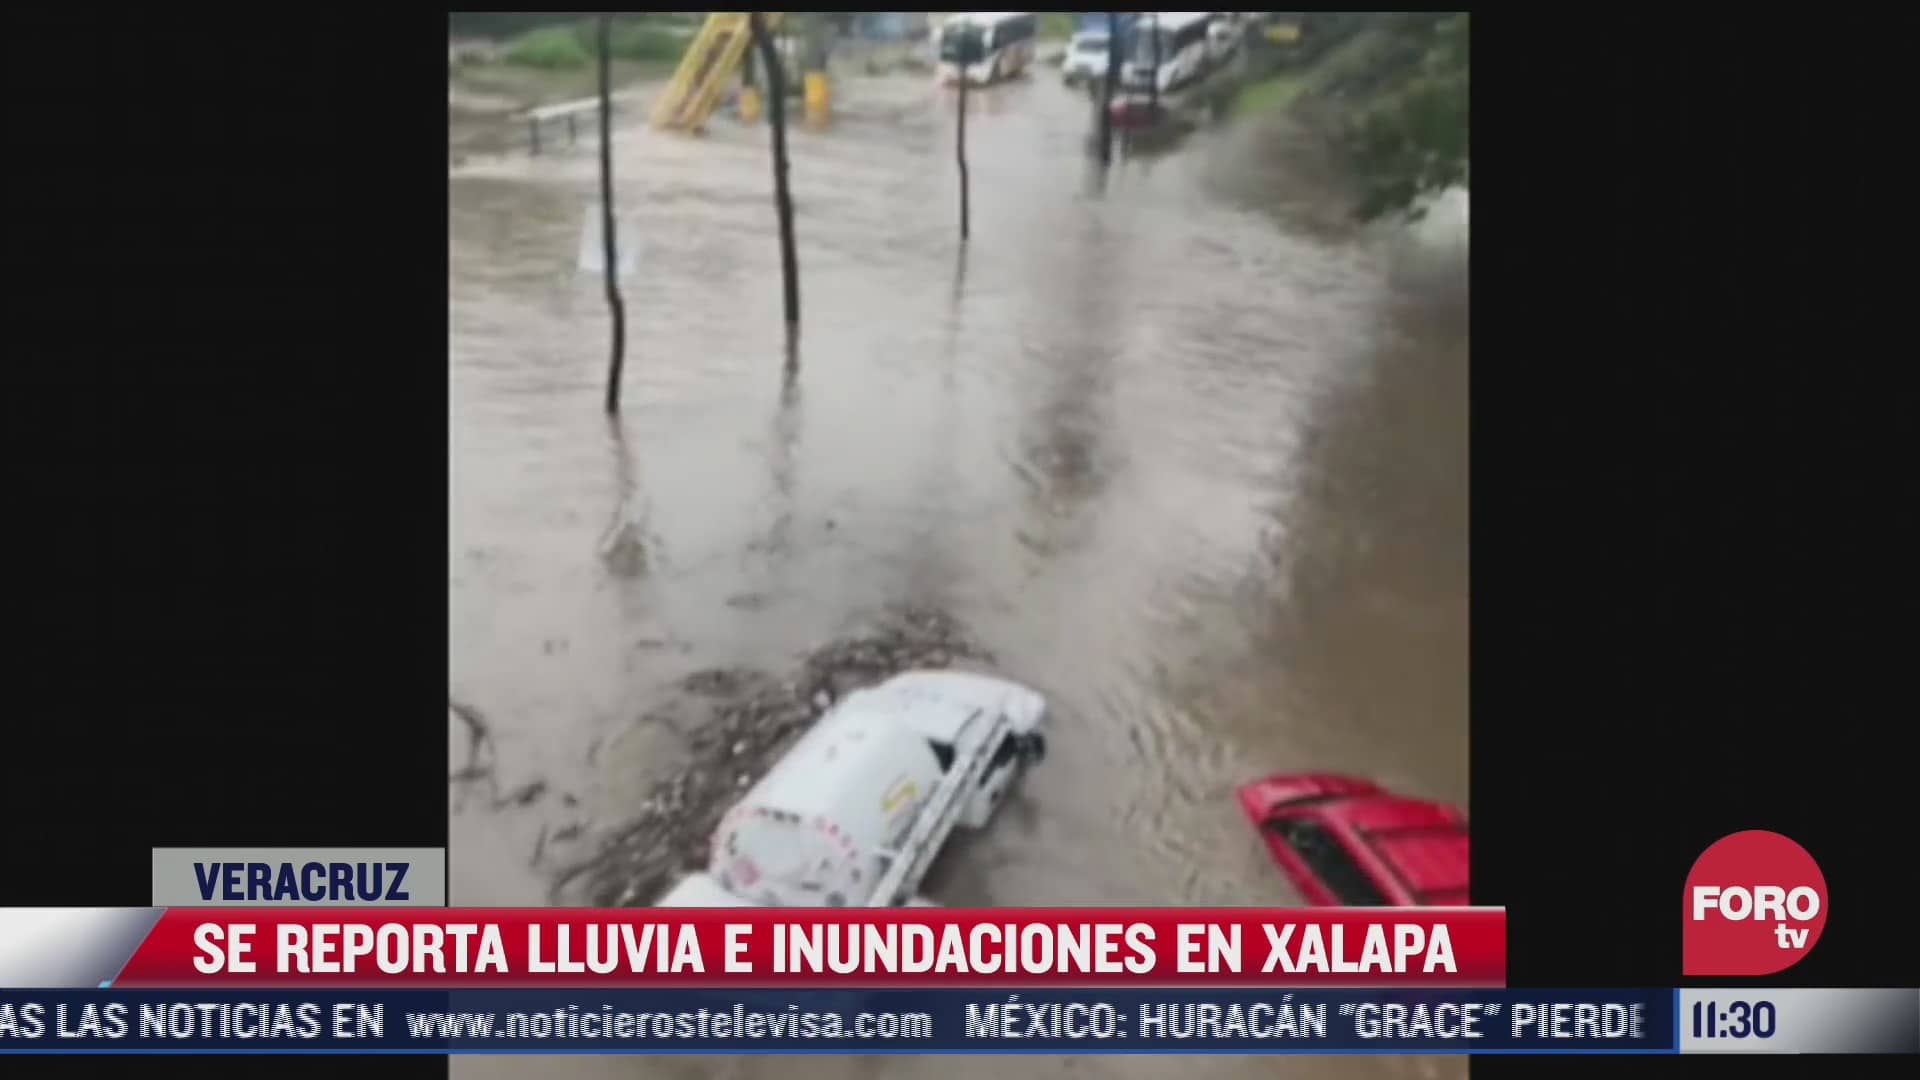 se reporta lluvia e inundaciones en xalapa por grace